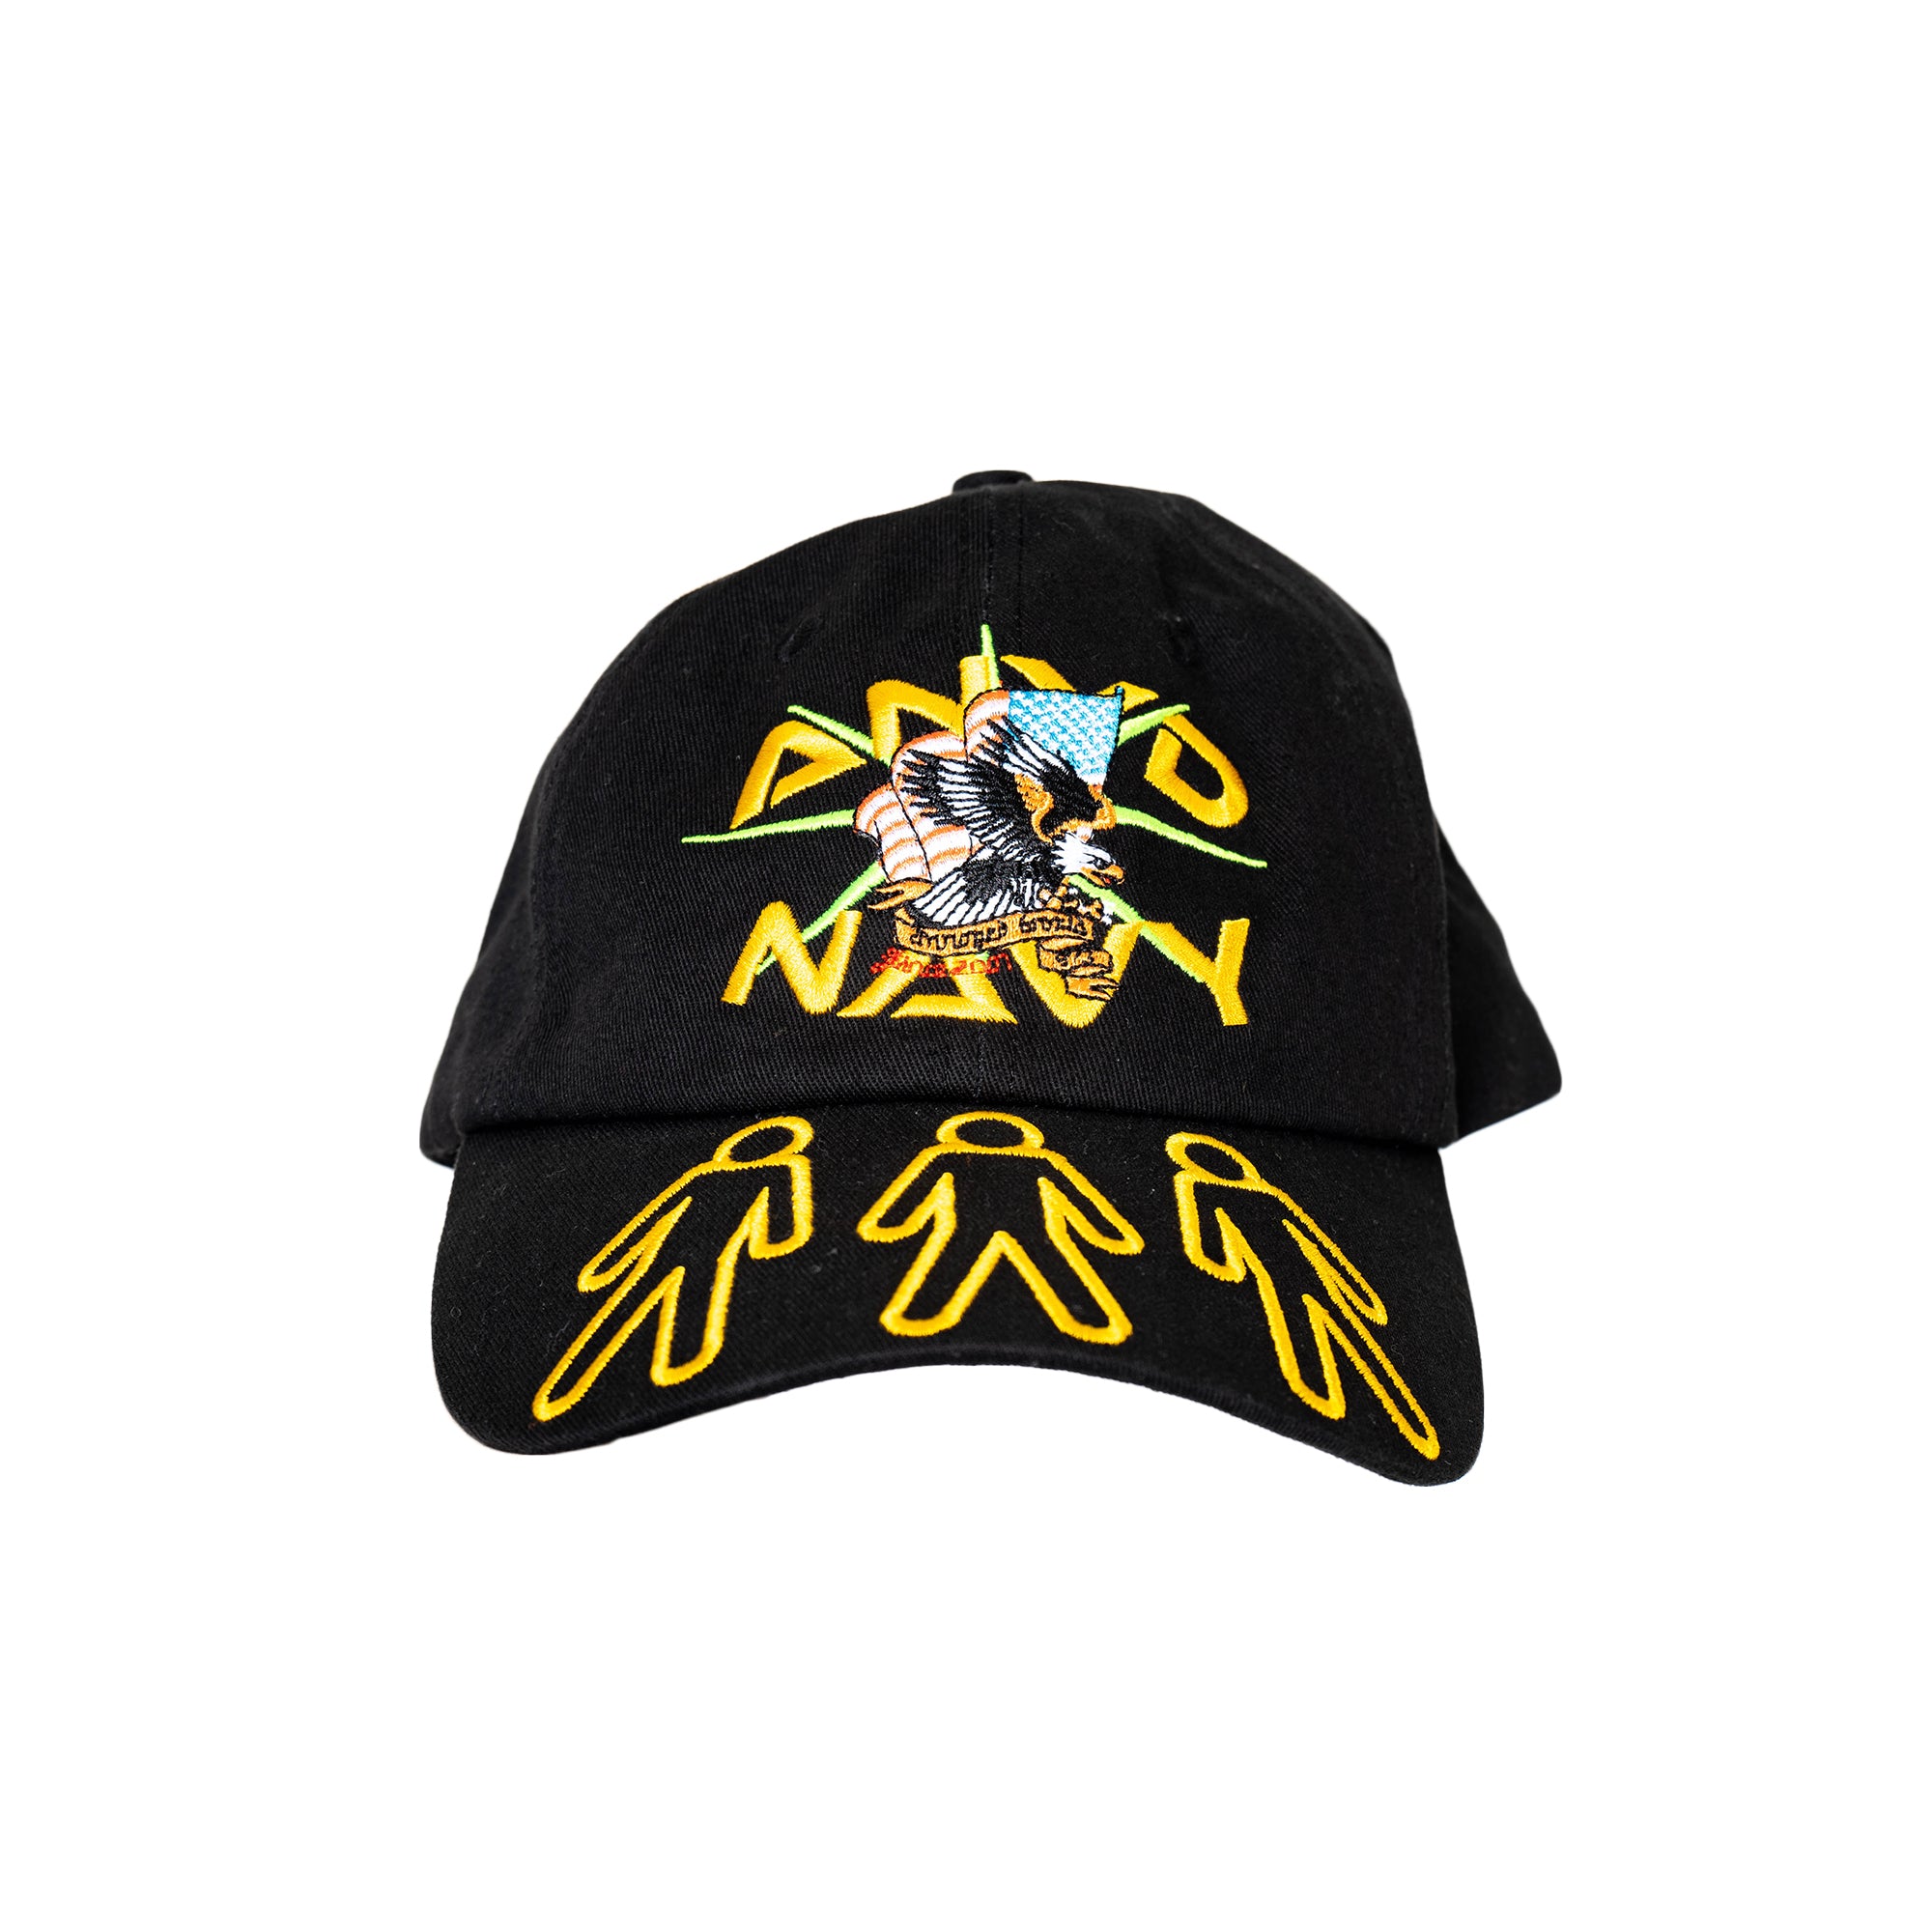 ANYD NAVY Hat